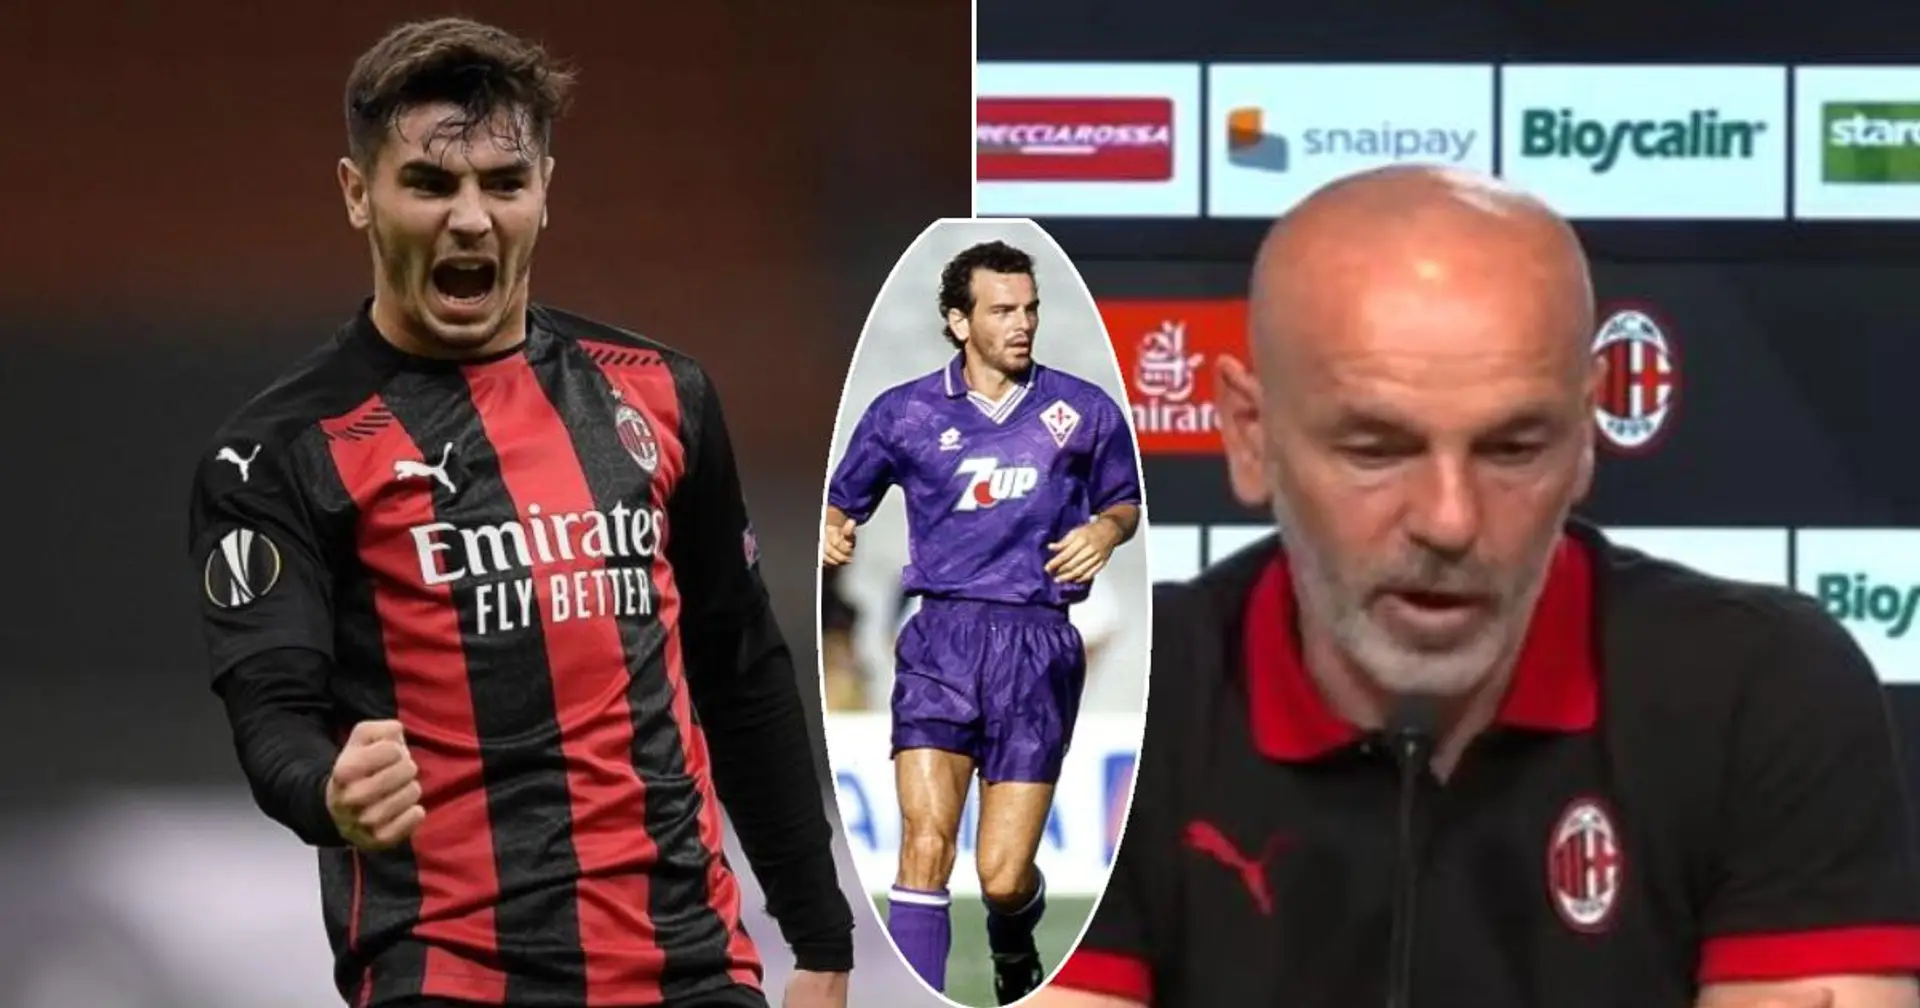 "Il est beaucoup plus fort que moi": le coach du Milan AC, Pioli, se compare au joueur prêté par le Real Madrid Brahim Diaz